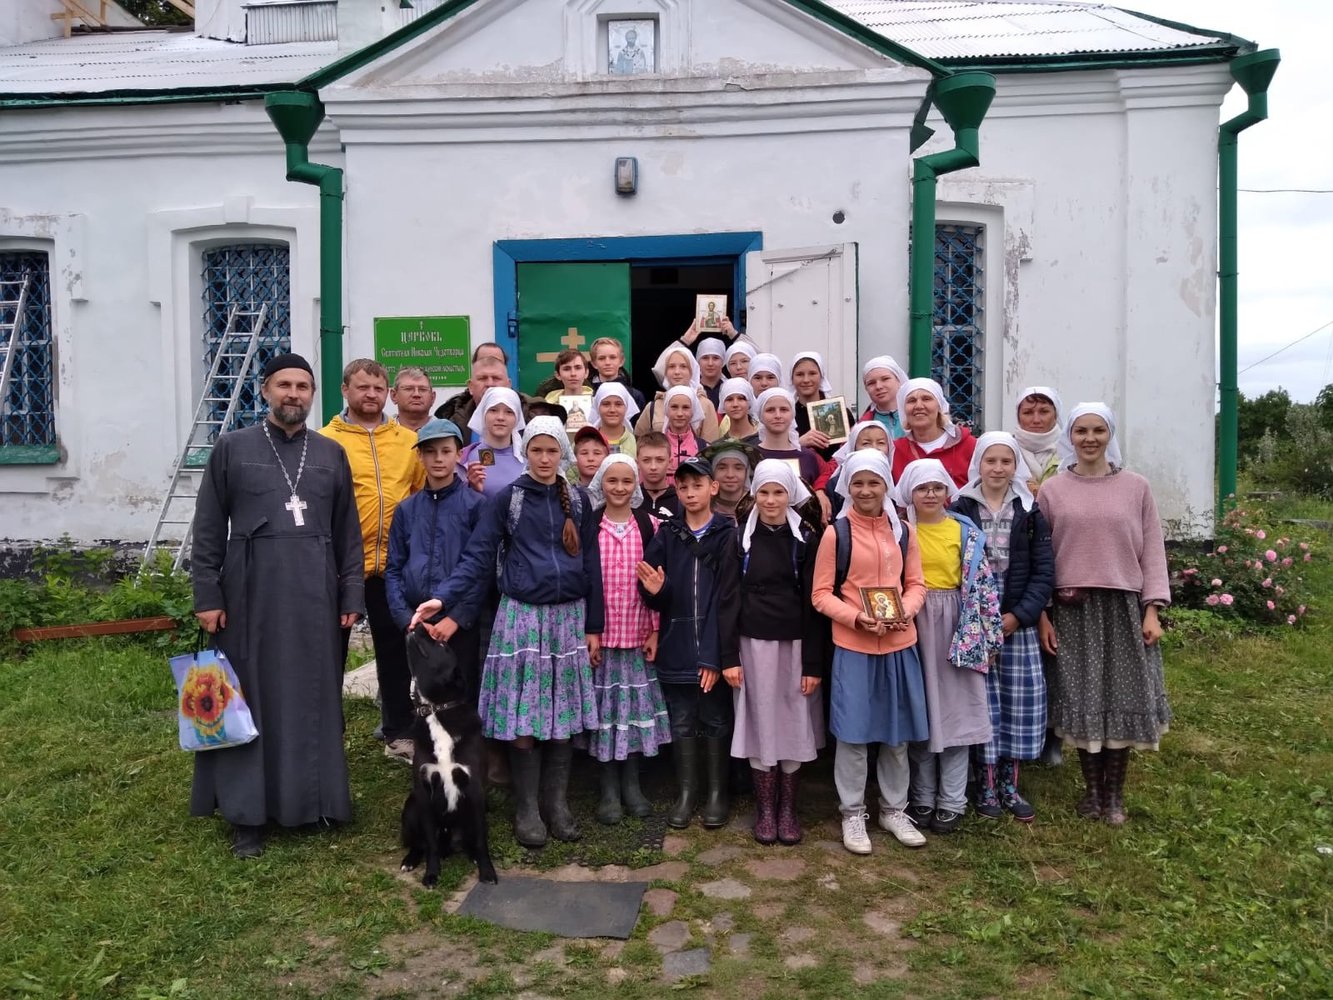 Трудовая православно-краеведческая экспедиция в селе Владимирец состоялась двенадцатый раз